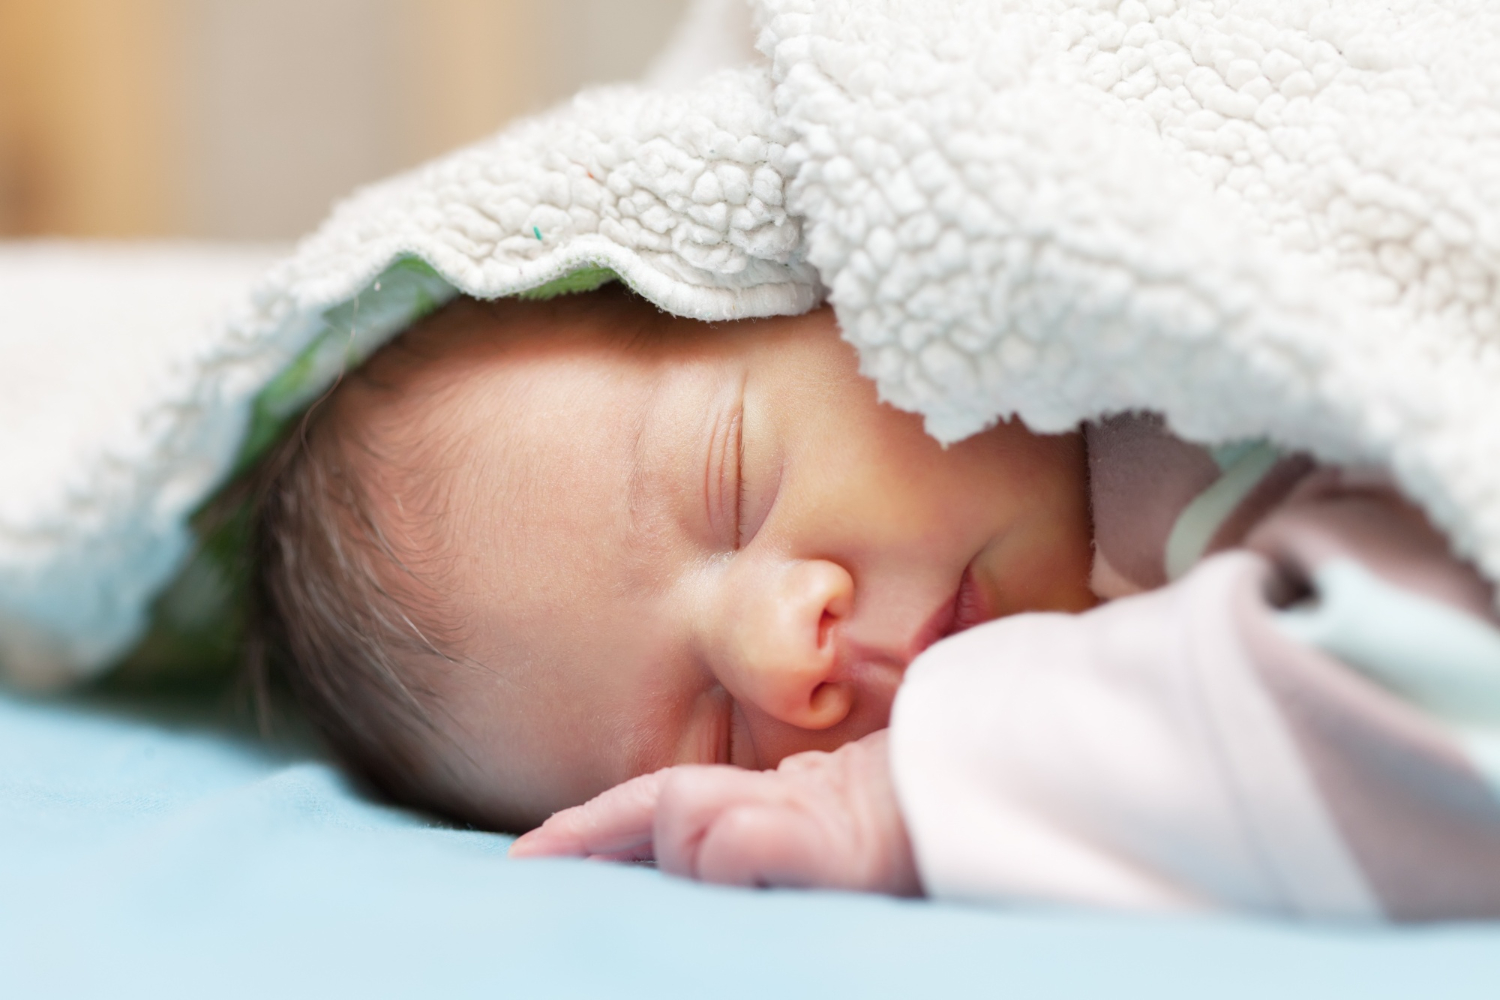  梦见一个新生婴儿是最美丽的梦之一。